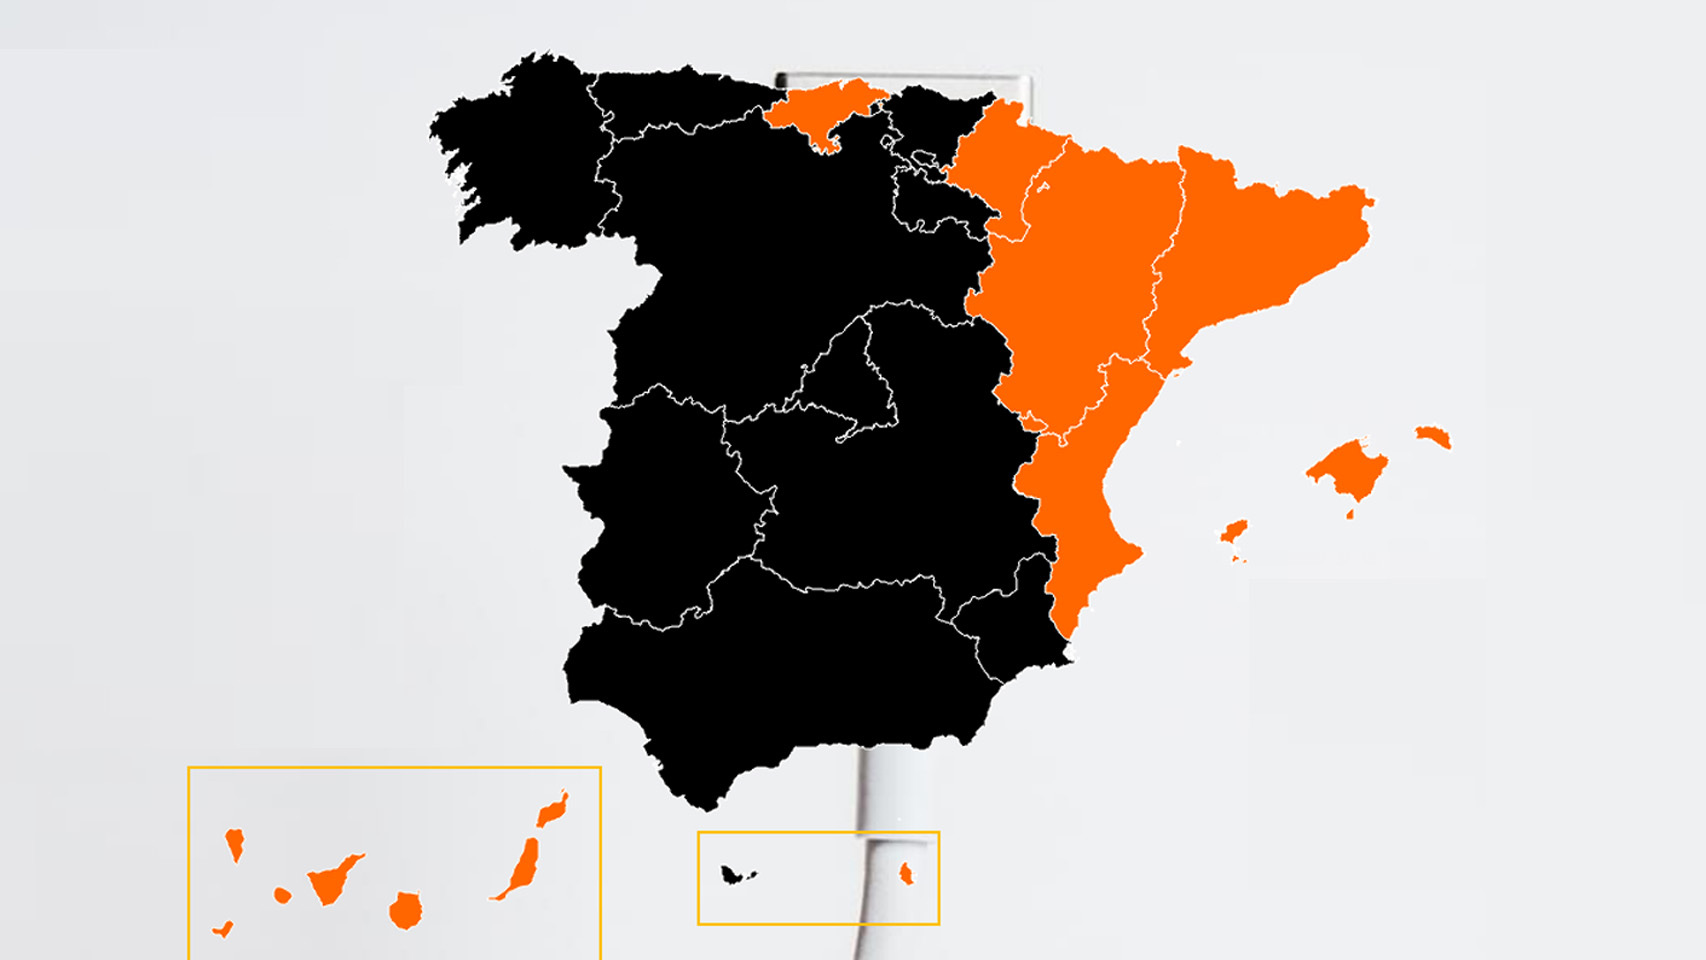 Marcas de móviles elegidas por los españoles.